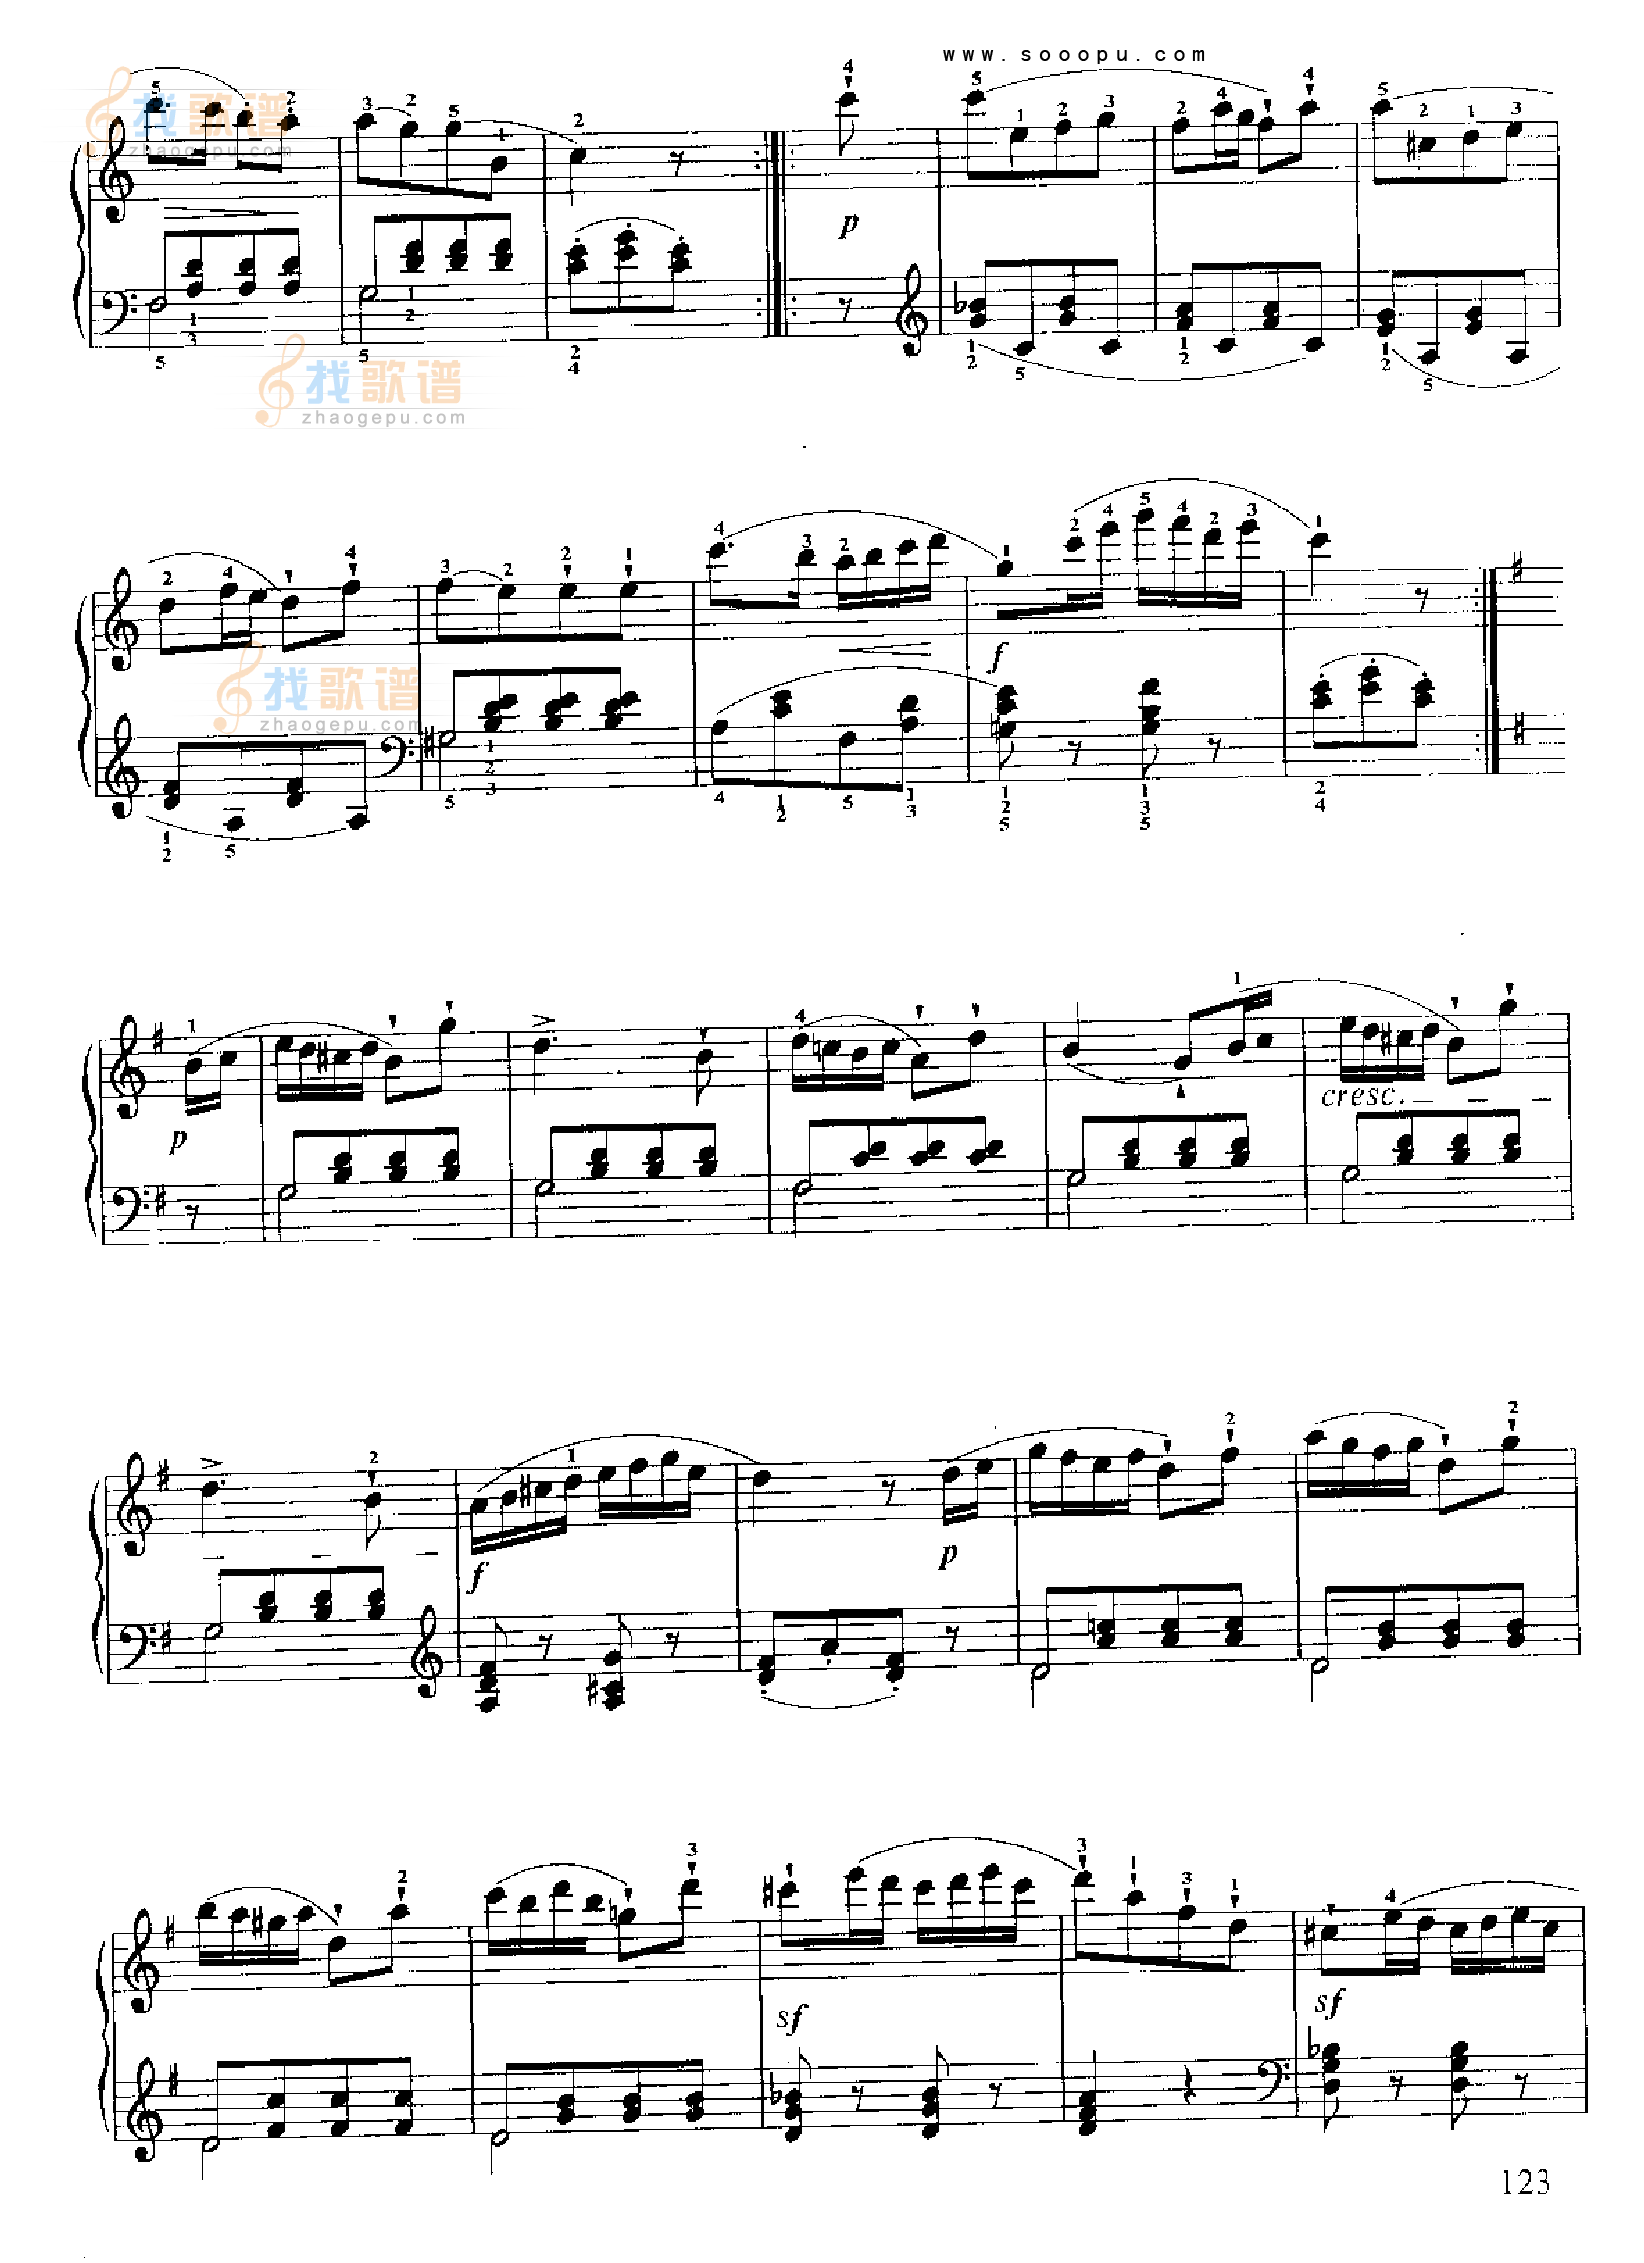 狄亚贝里 格式: 钢琴谱 风格: 流行类 上传时间: 2015-04-19 小奏鸣曲图片